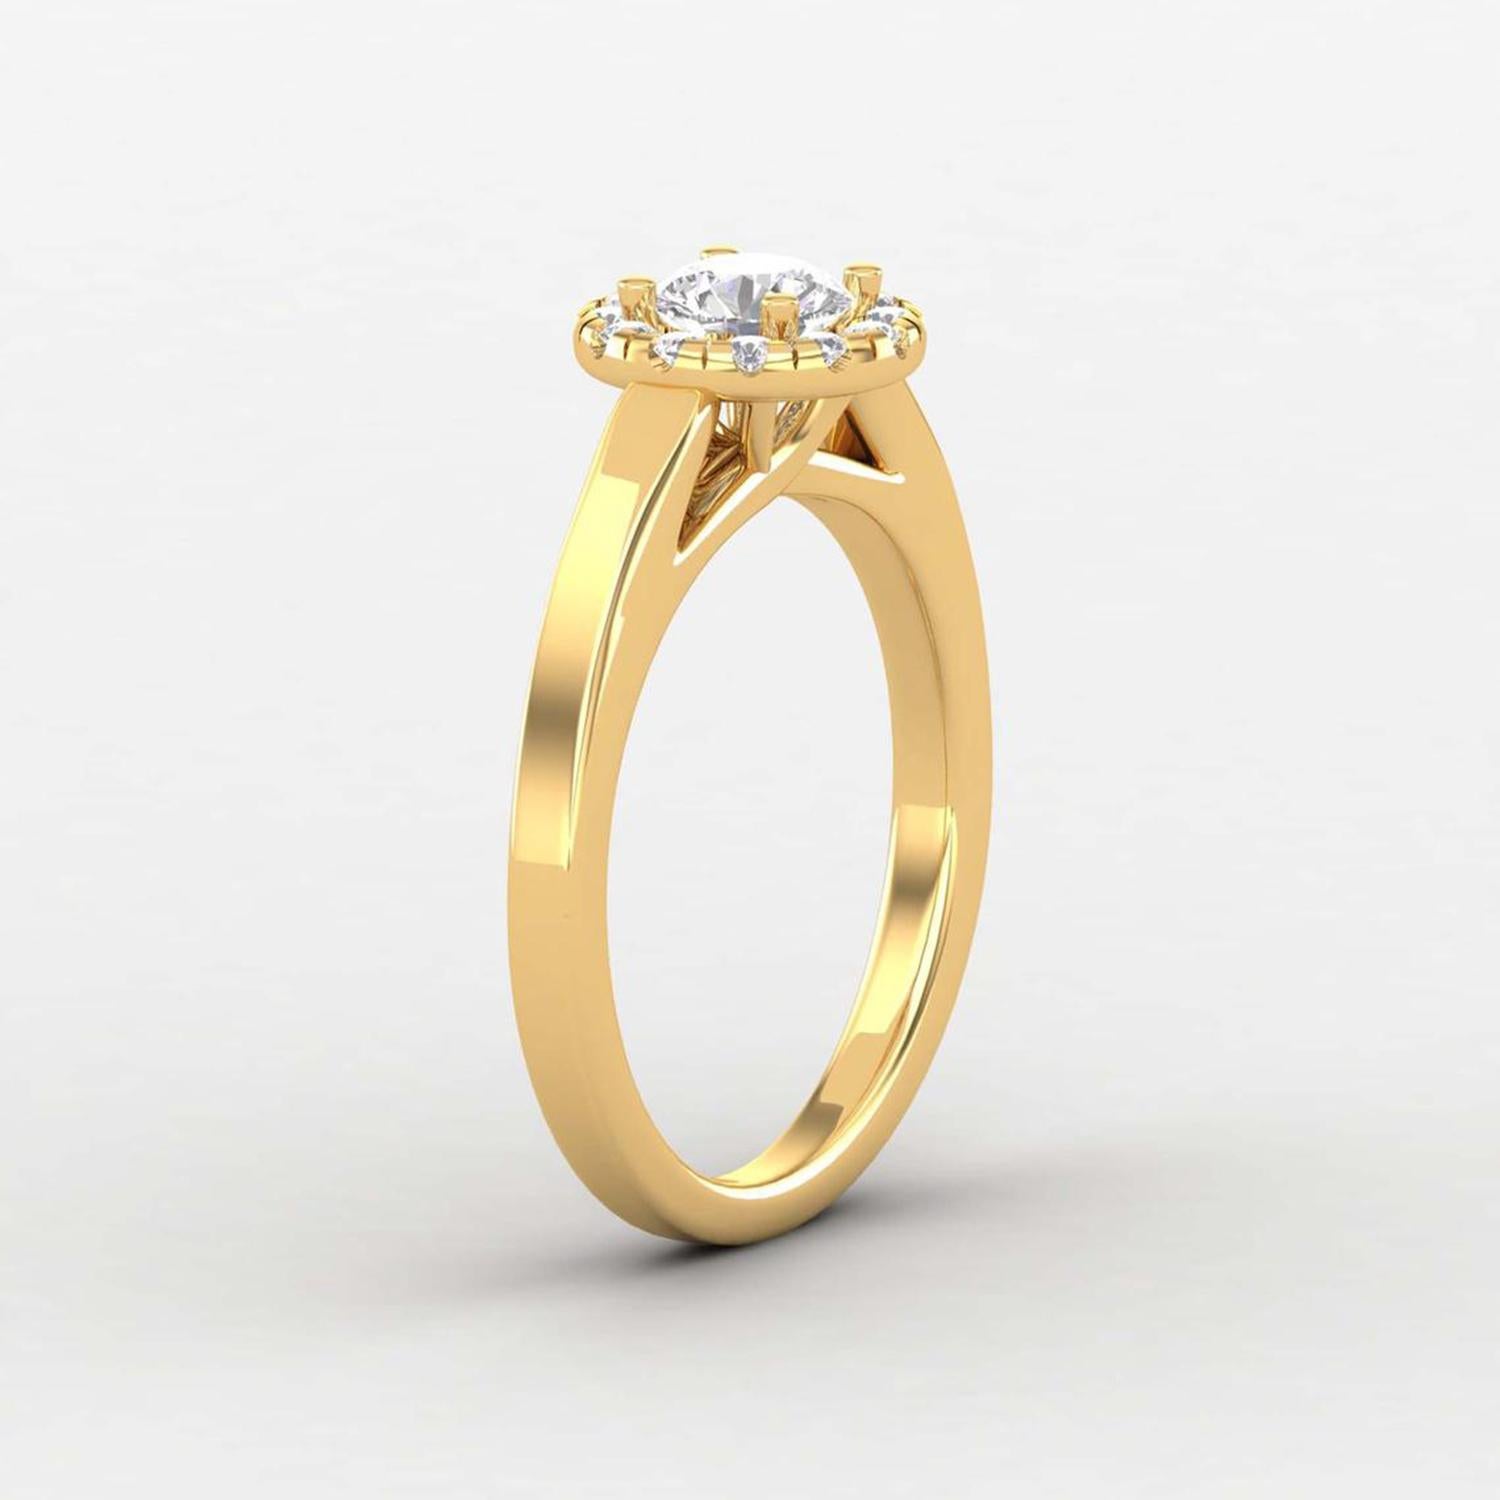 Modern 14 K Gold Moissanite Ring / Moissanite Solitaire Ring / Engagement Ring for Her For Sale